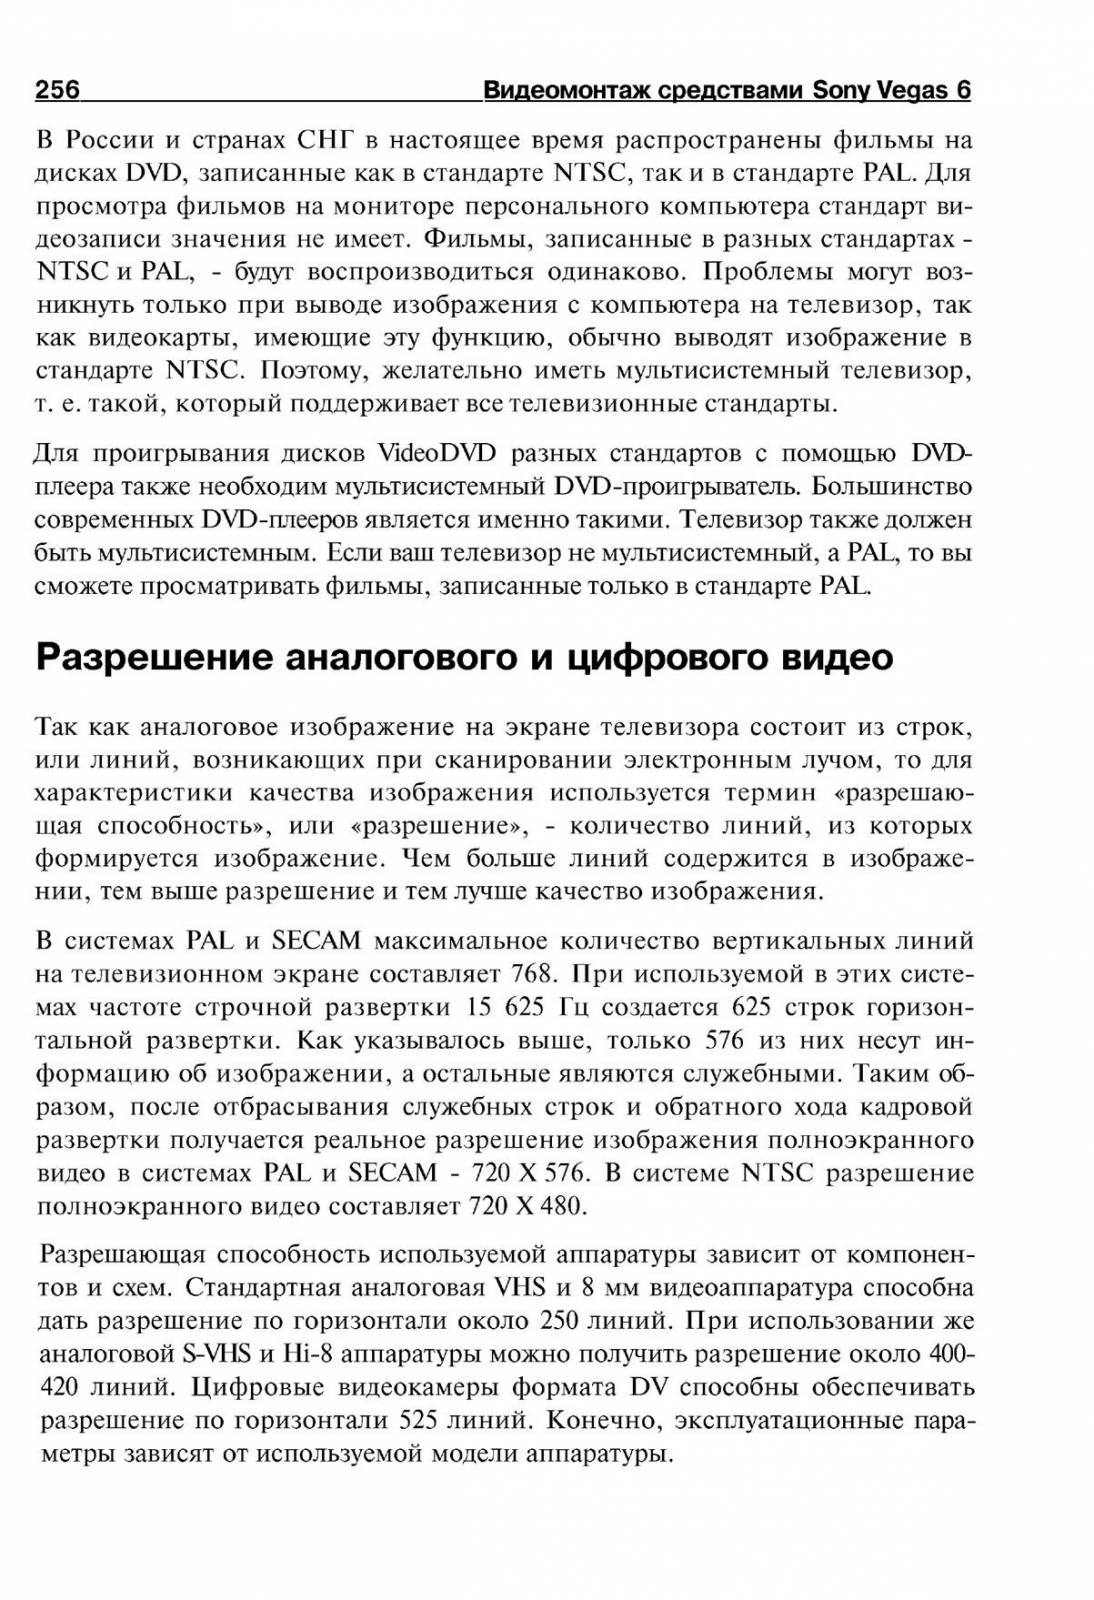 http://redaktori-uroki.3dn.ru/_ph/14/444997528.jpg